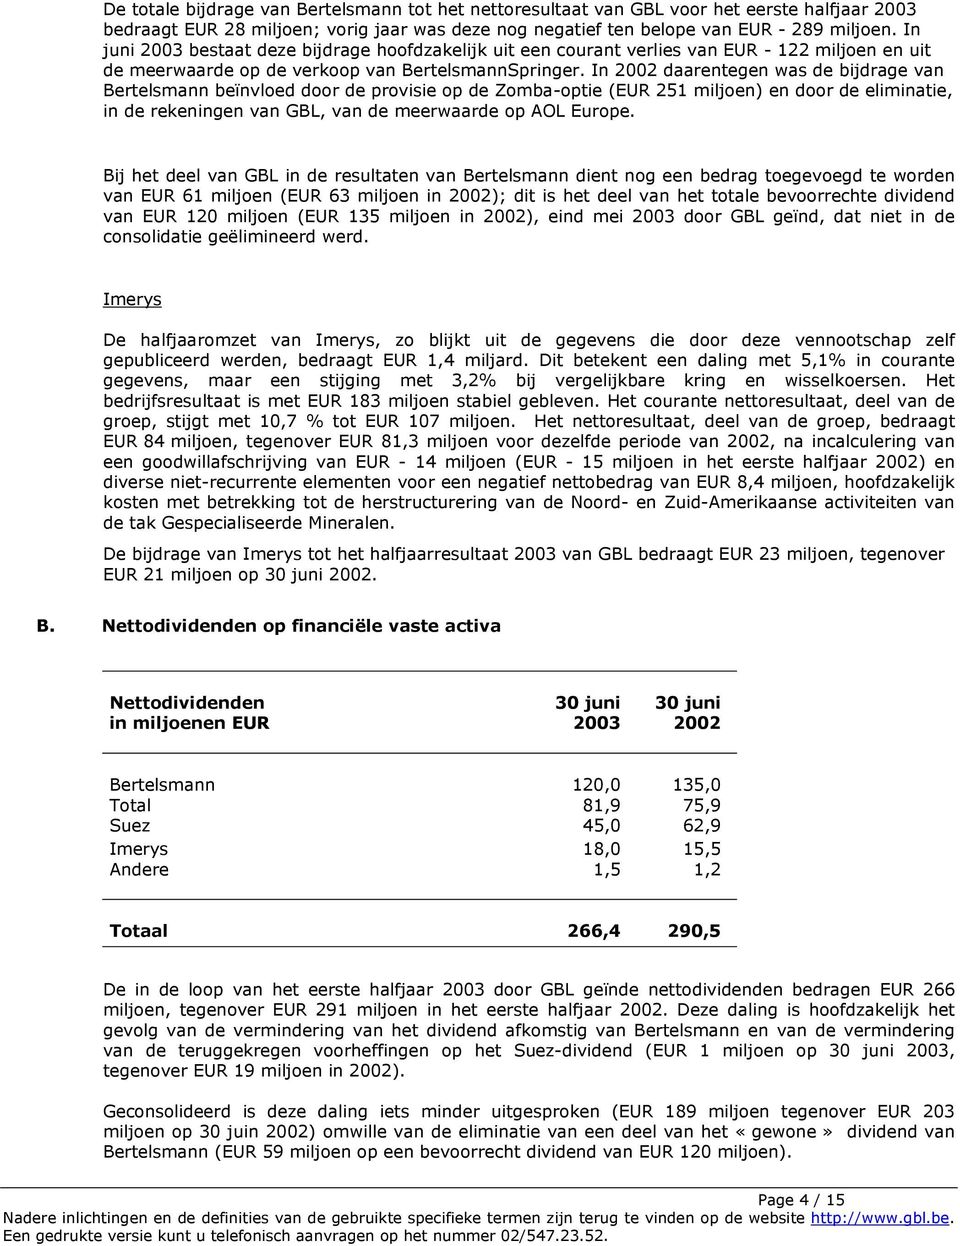 In 2002 daarentegen was de bijdrage van Bertelsmann beïnvloed door de provisie op de Zomba-optie (EUR 251 miljoen) en door de eliminatie, in de rekeningen van GBL, van de meerwaarde op AOL Europe.